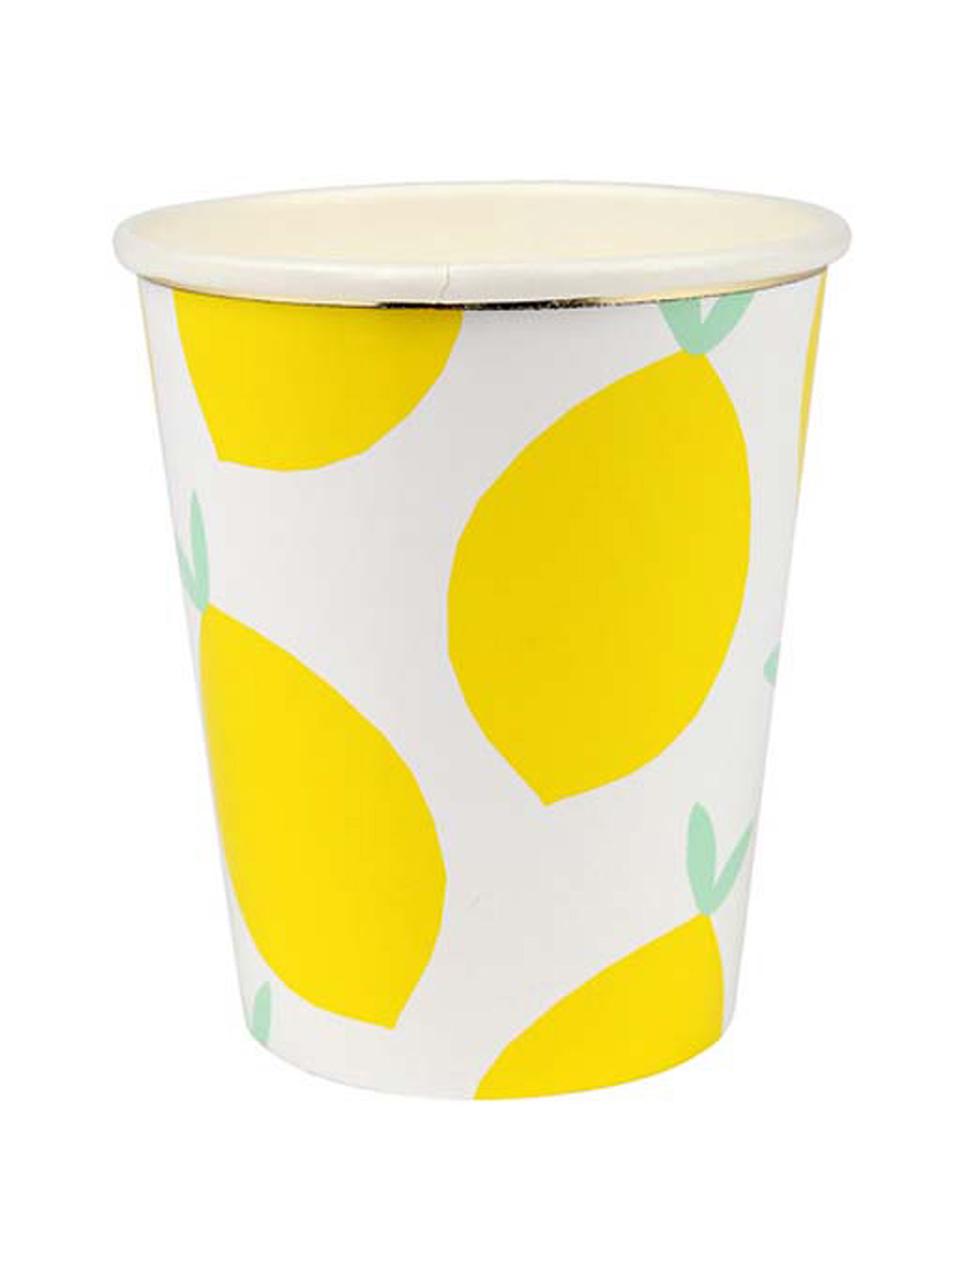 Papier-Becher Lemon, 8 Stück, Papier, foliert, Weiss, Gelb, Grün, Ø 8 x H 8 cm